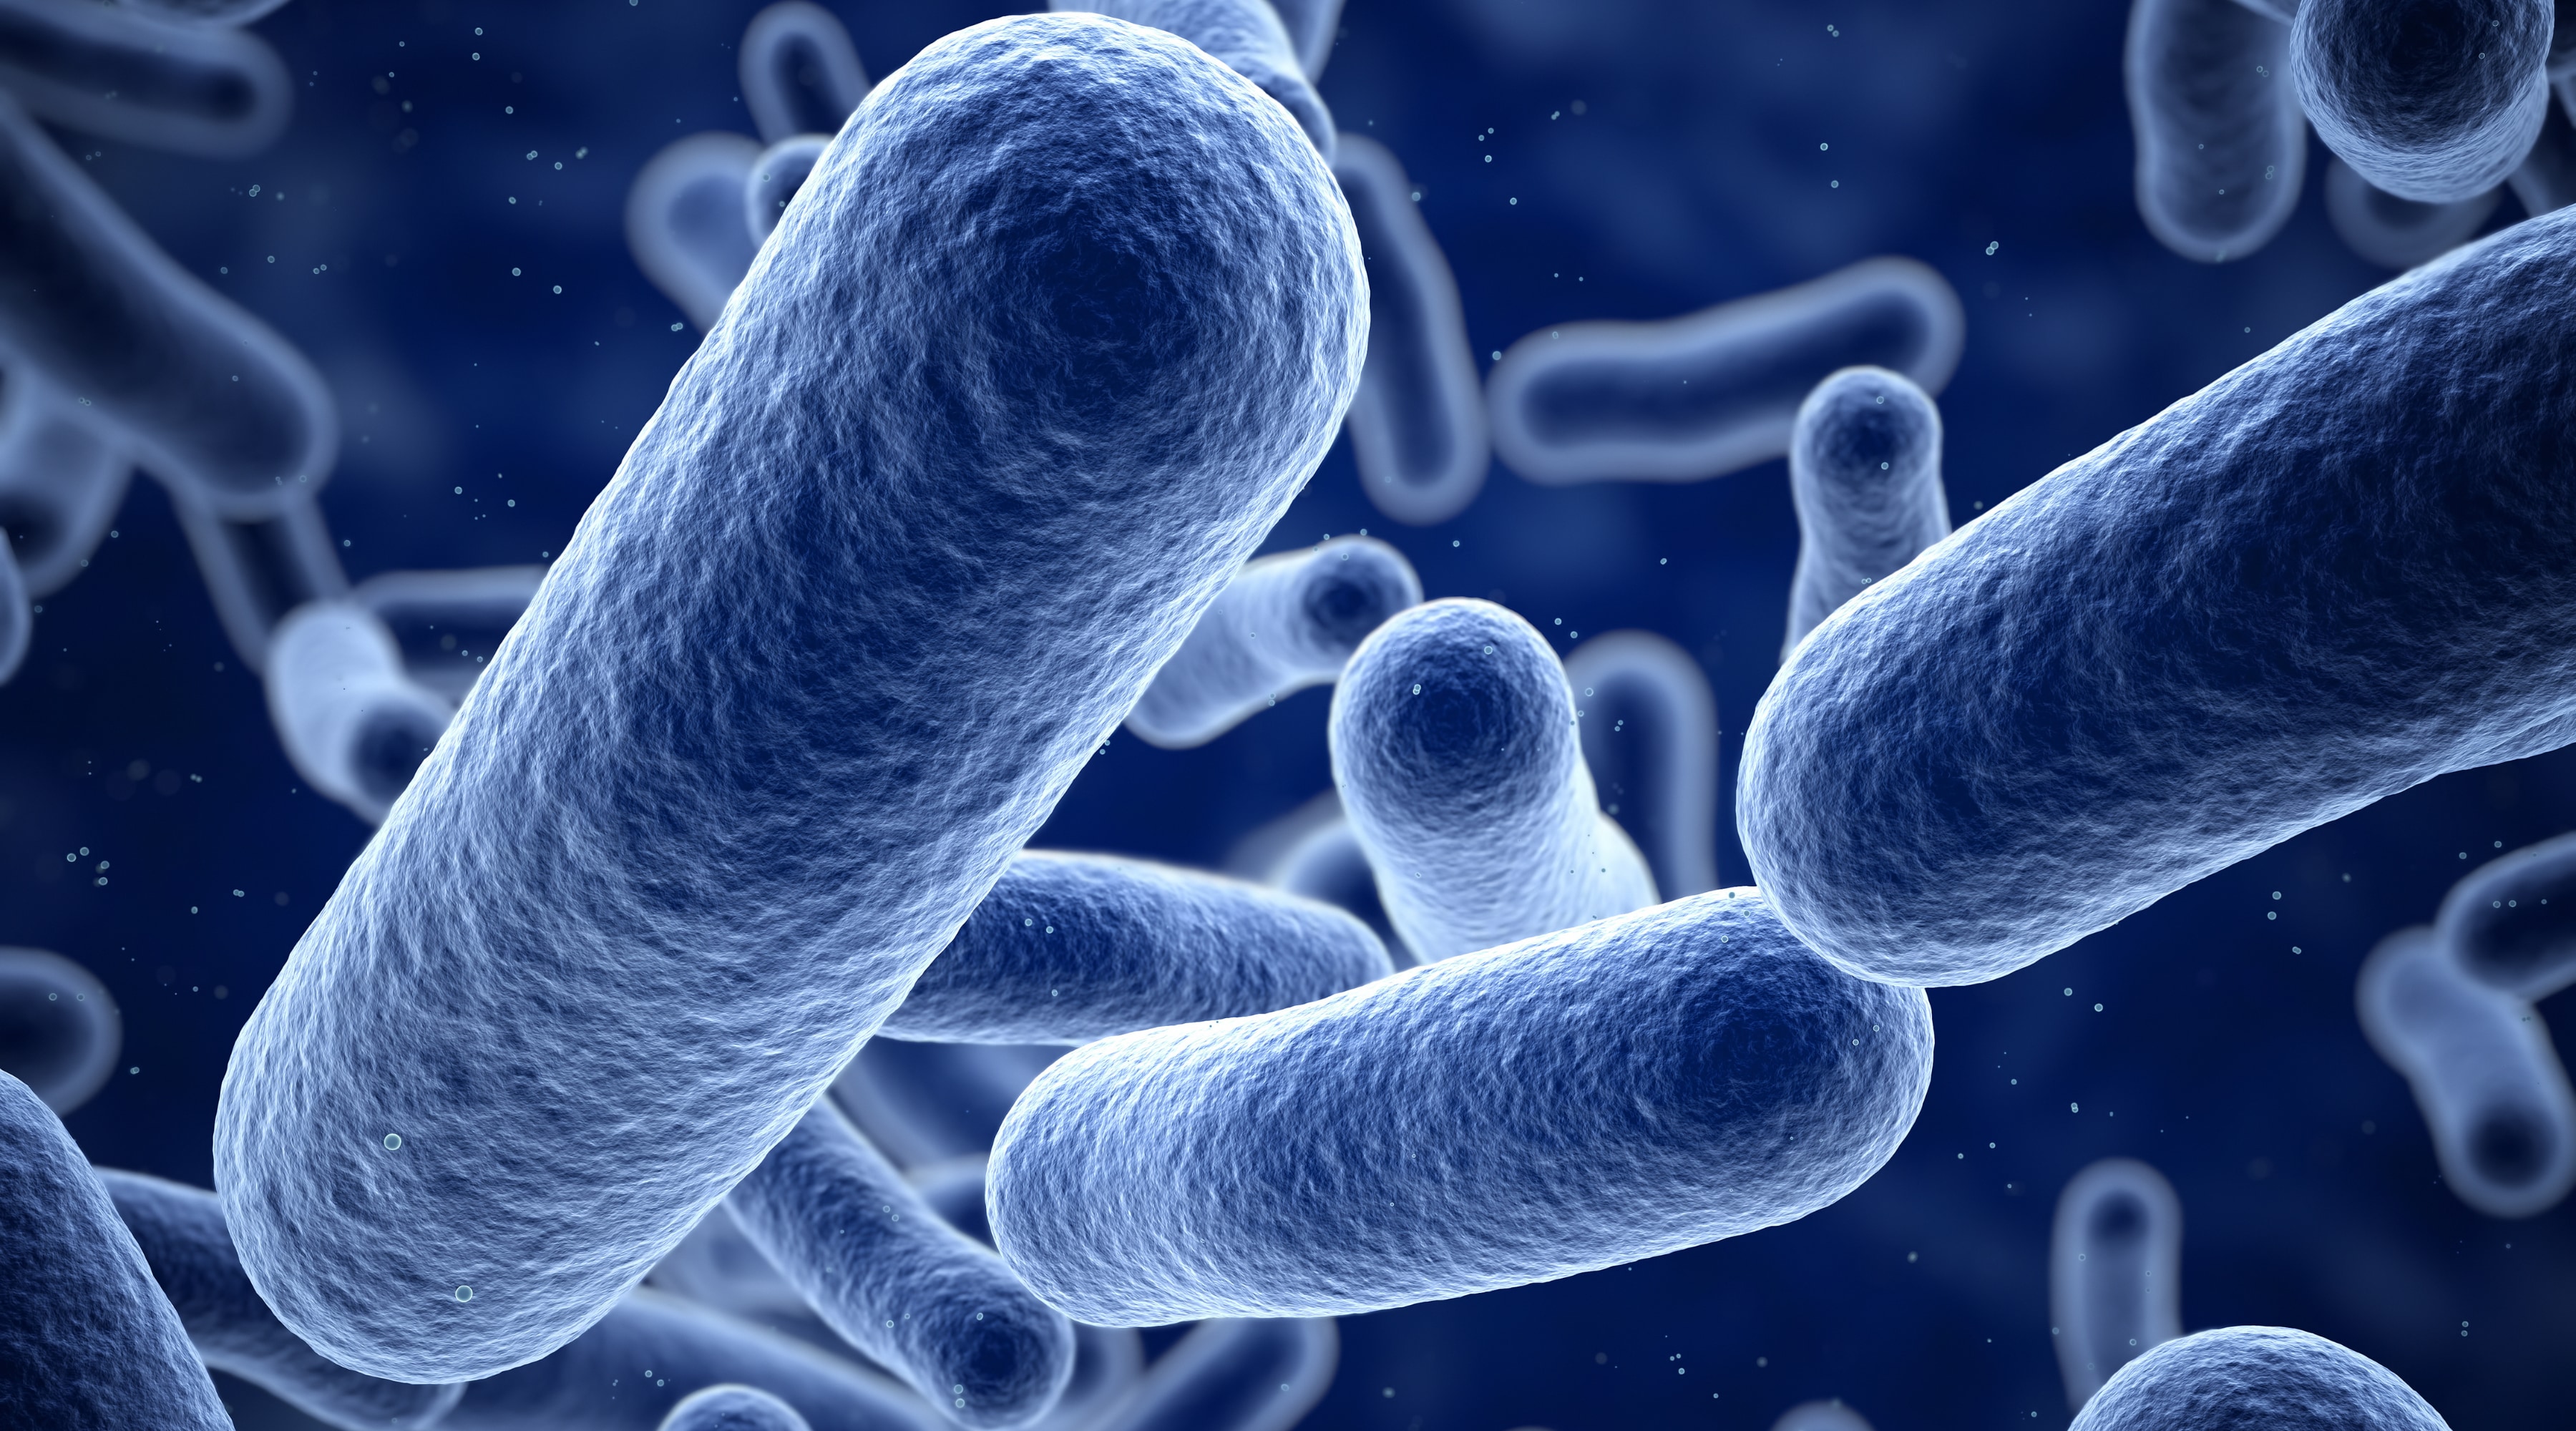 LactiPlus - allt du behöver veta om pionjären inom probiotika